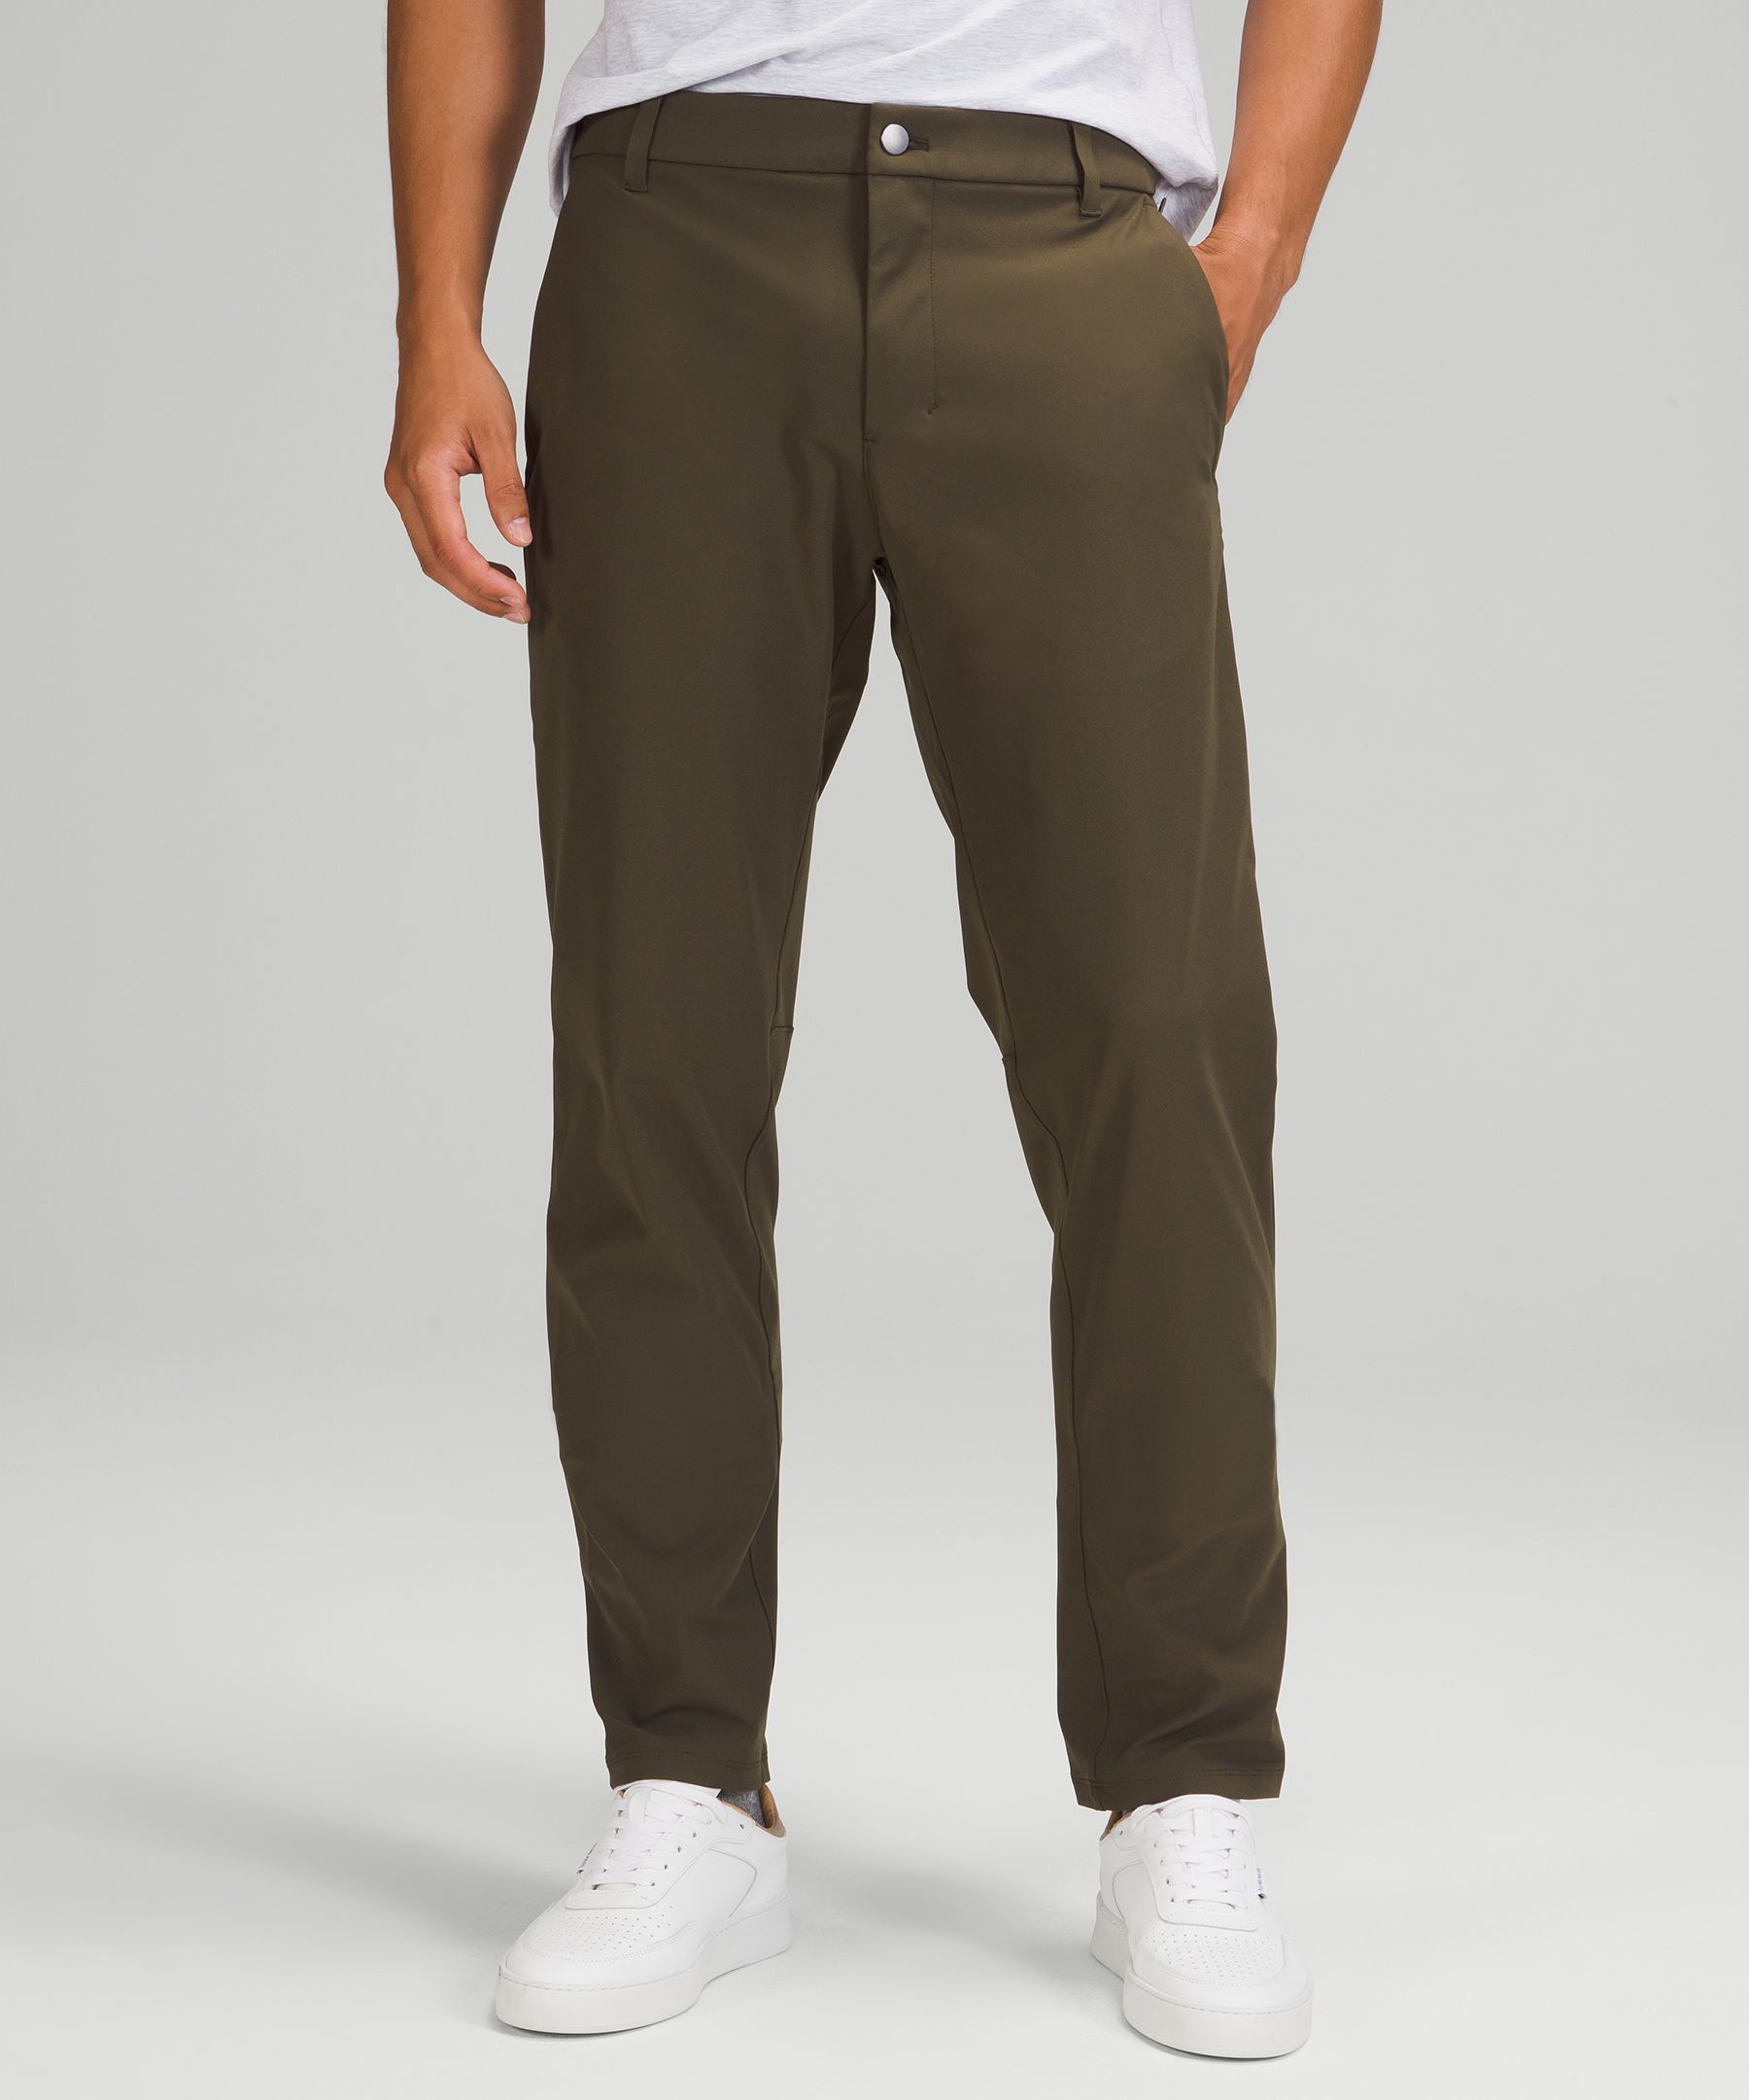 Lululemon Commission Slim-fit Pants 30 Warpstreme - Asphalt Grey